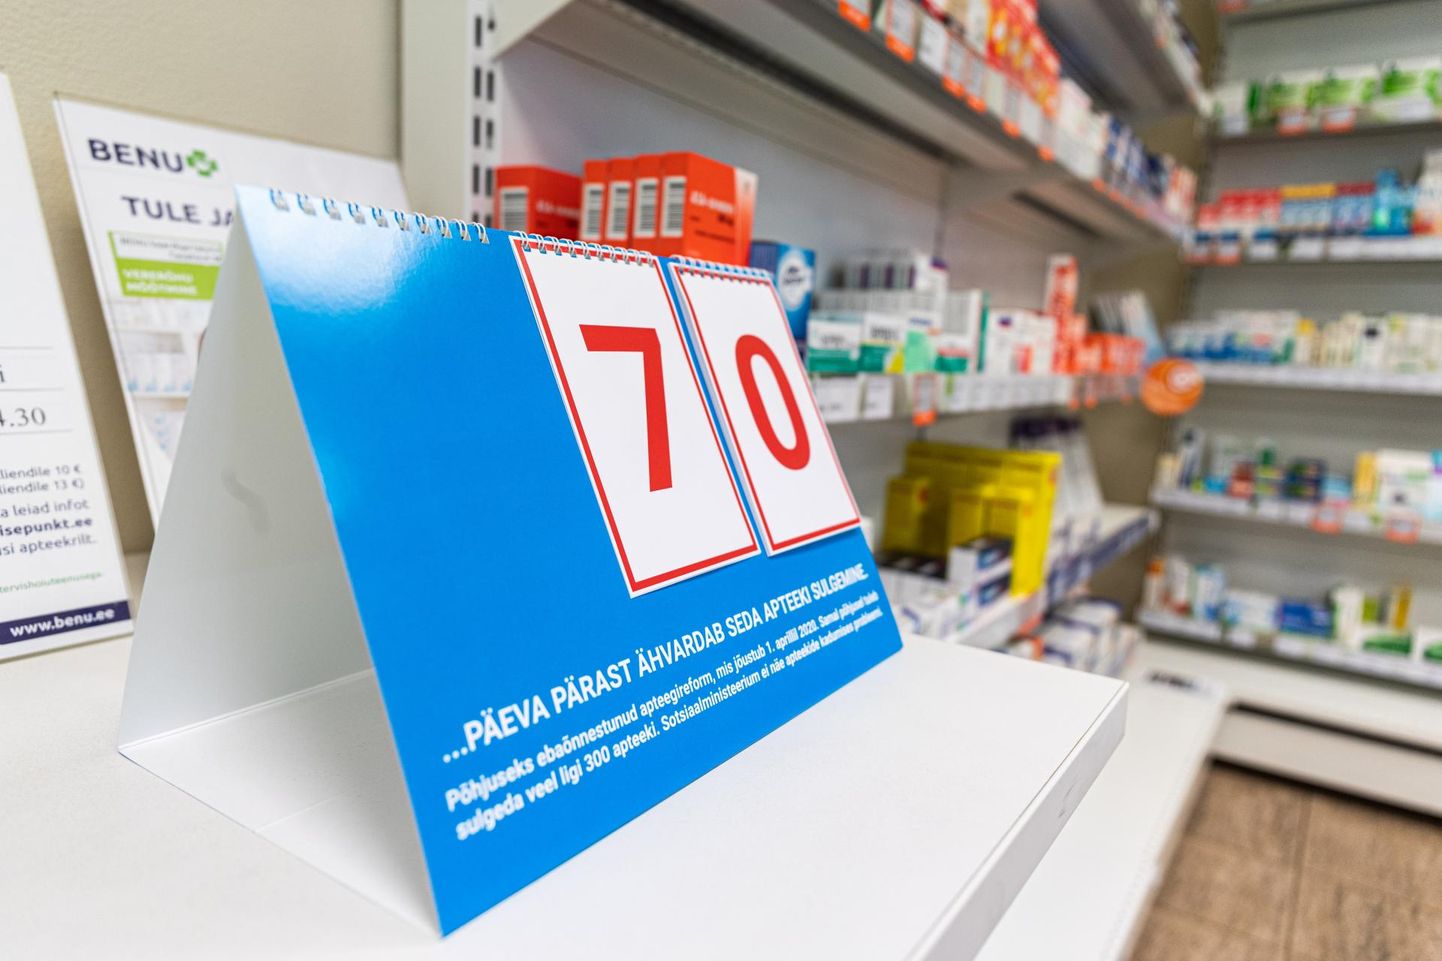 Календарь, приуроченный к аптечной реформе, показывал вчера, что этой аптеке Benu до закрытия осталось работать ровно 70 дней.